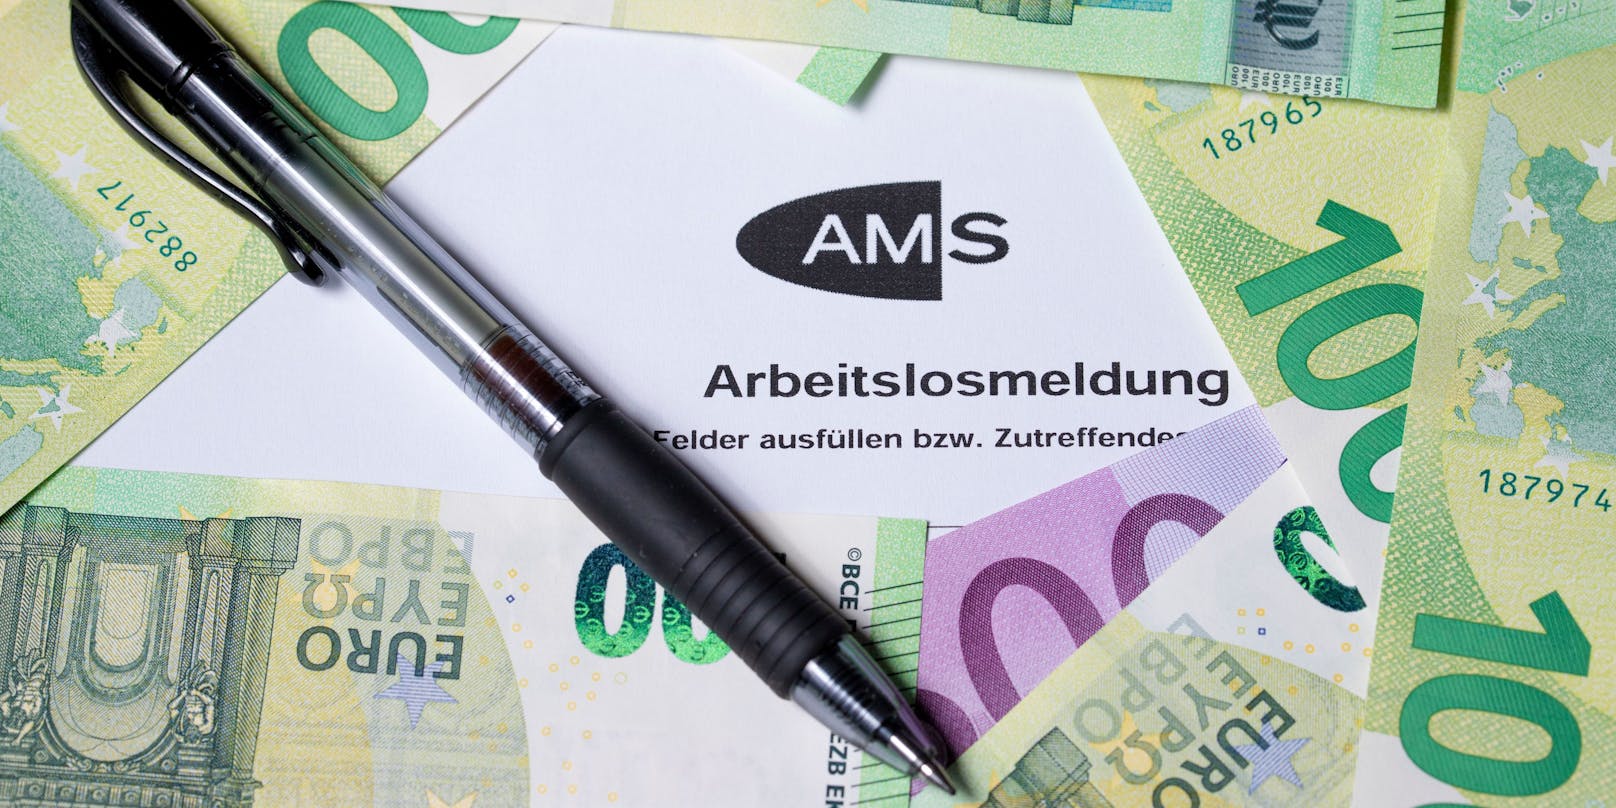 AMS-Kunden und Mindestpensionisten bekommen einen neuen 300-Euro-Bonus.